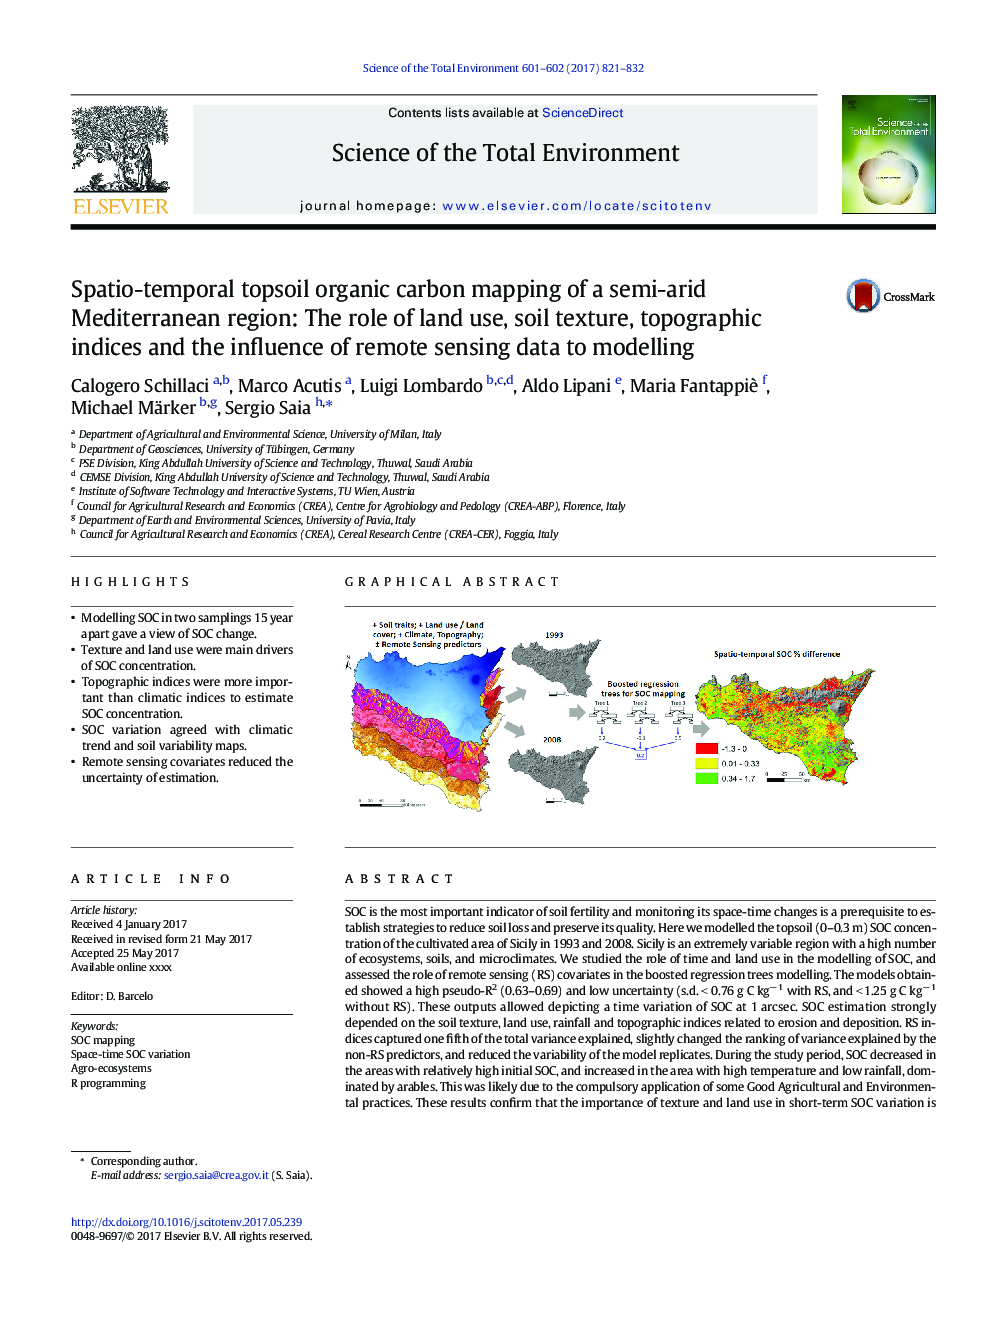 نقشه برداری کربن آلی خاکی اسپکتیو-زمان محلی نیمه خشک منطقه مدیترانه: نقش استفاده از زمین، بافت خاک، شاخص های توپوگرافی و تاثیر داده های سنجش از دور به مدل سازی 